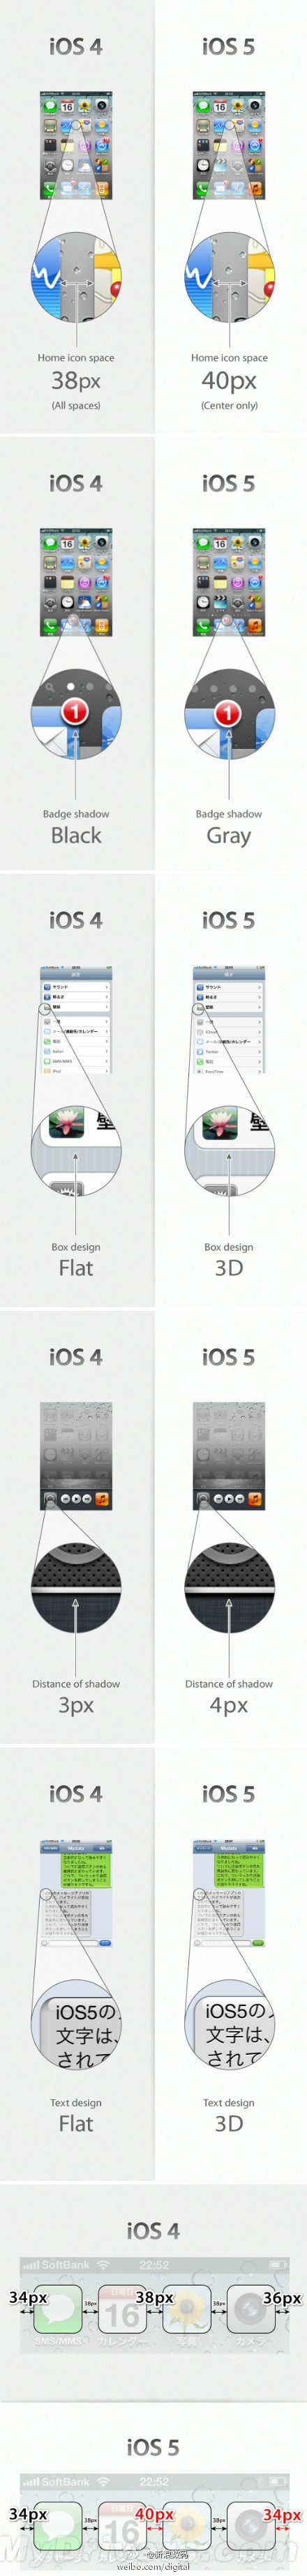 细节决定成败：你绝对想不到的iOS 5/4差异